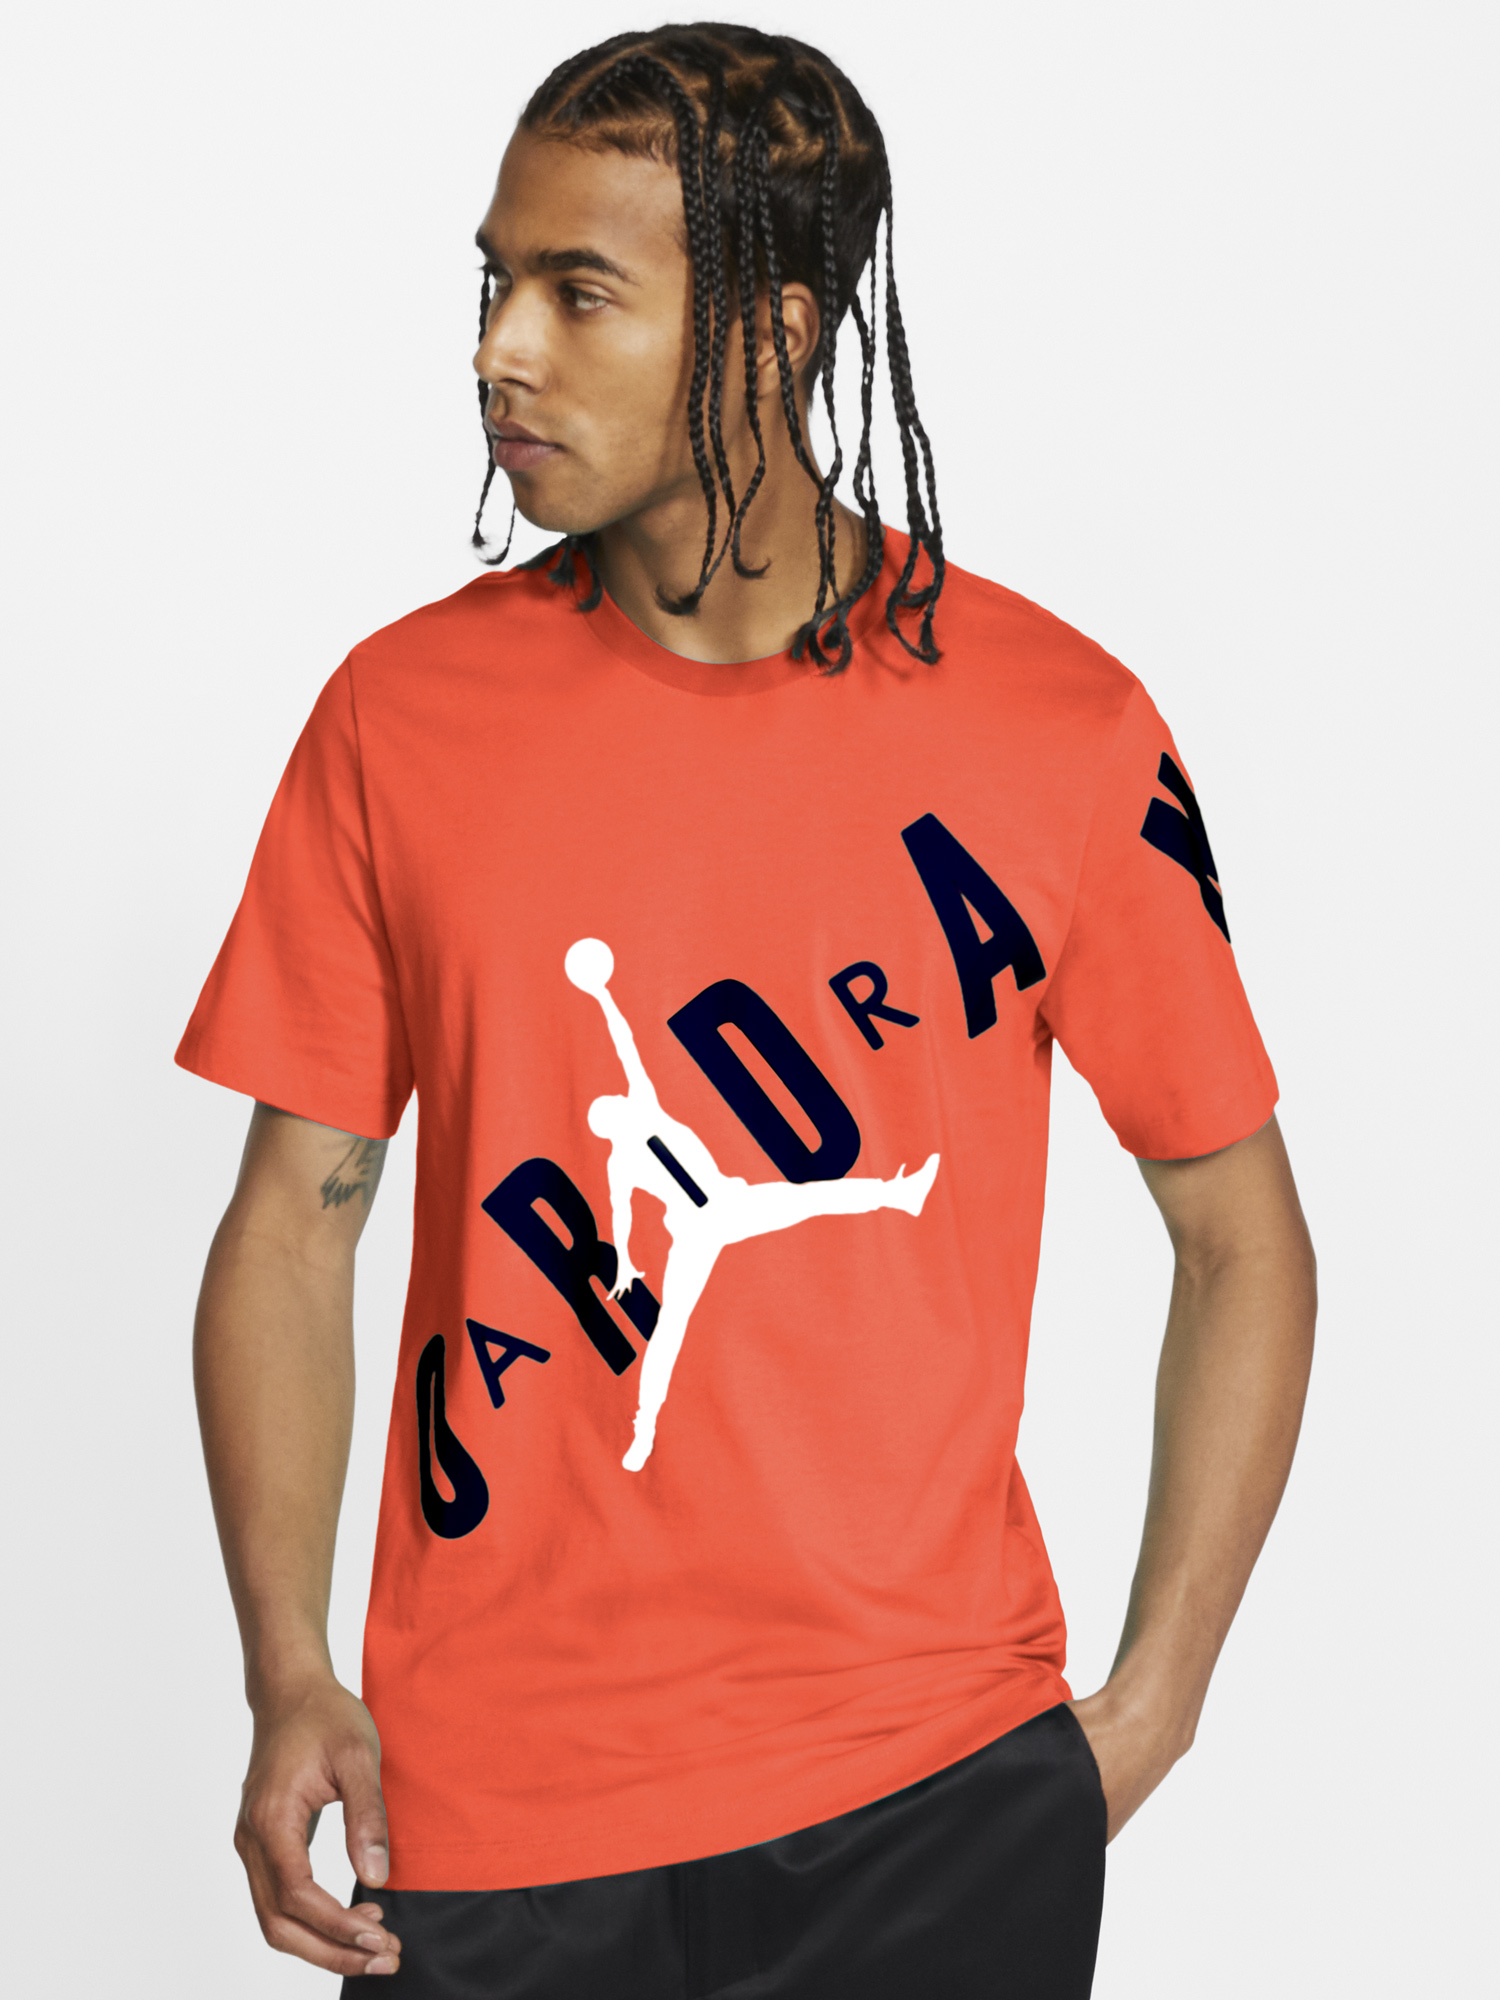 Air Jordan 1 High Electro Orange Shirts to Match